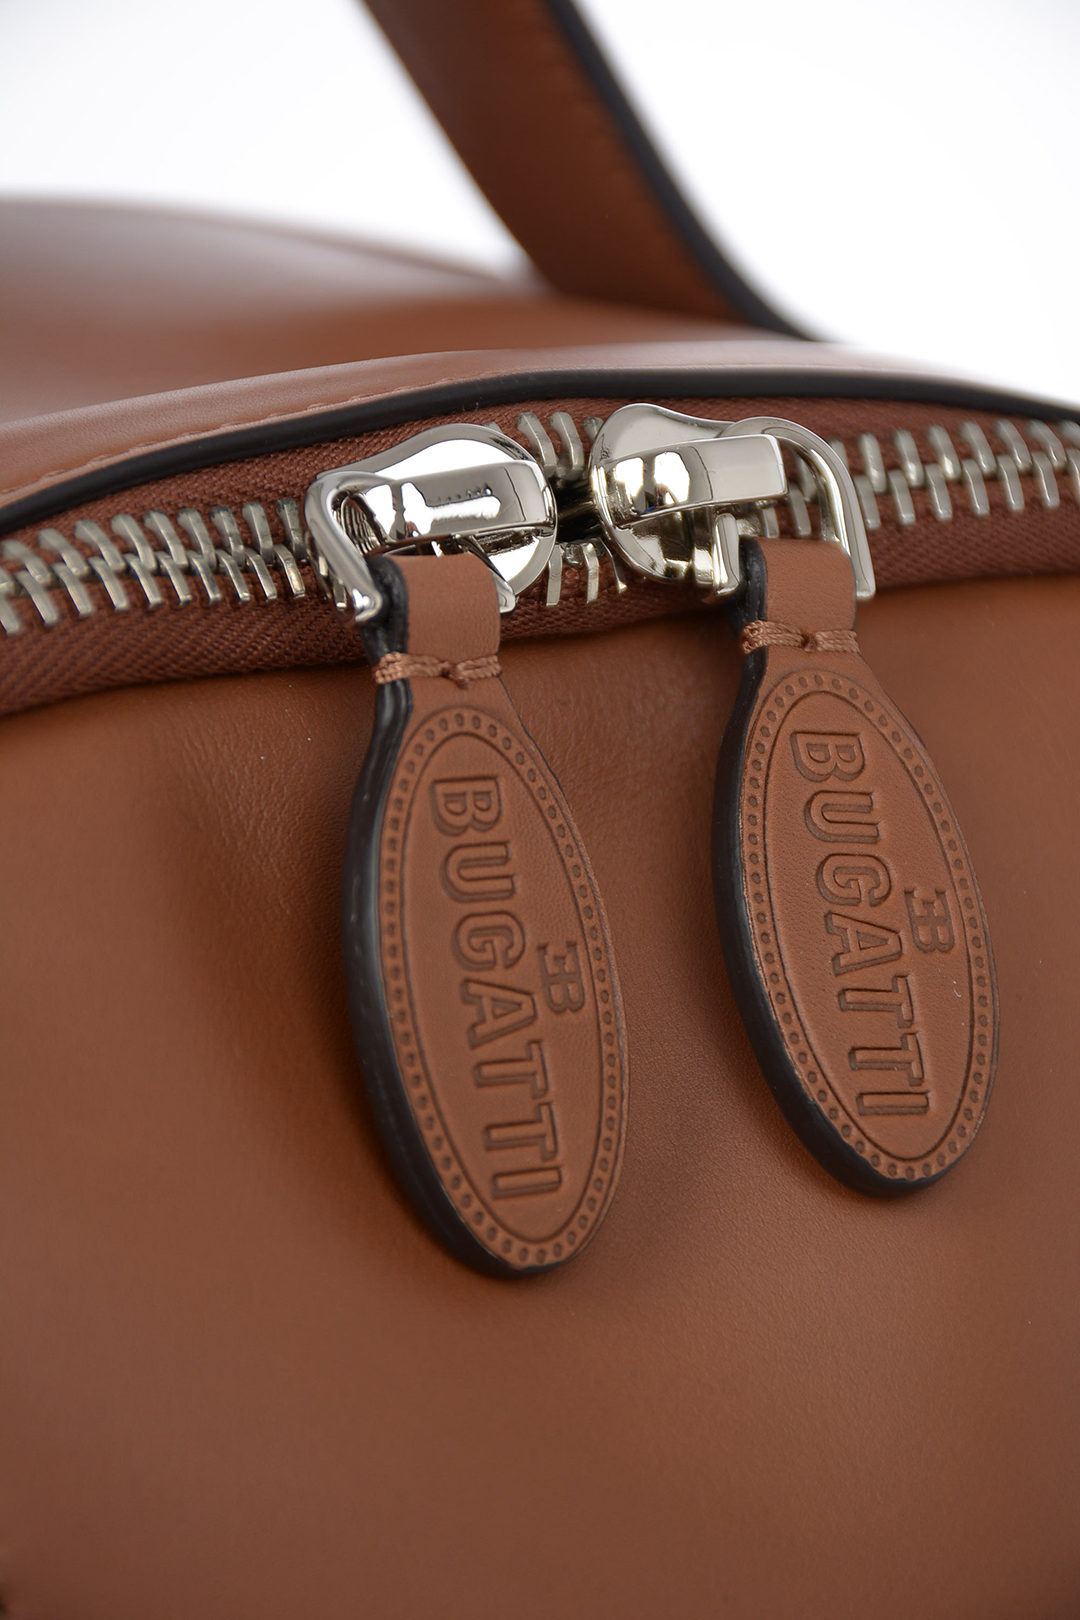 Armani GIORGIO ARMANI BUGATTI Leather Backpack men - Glamood Outlet